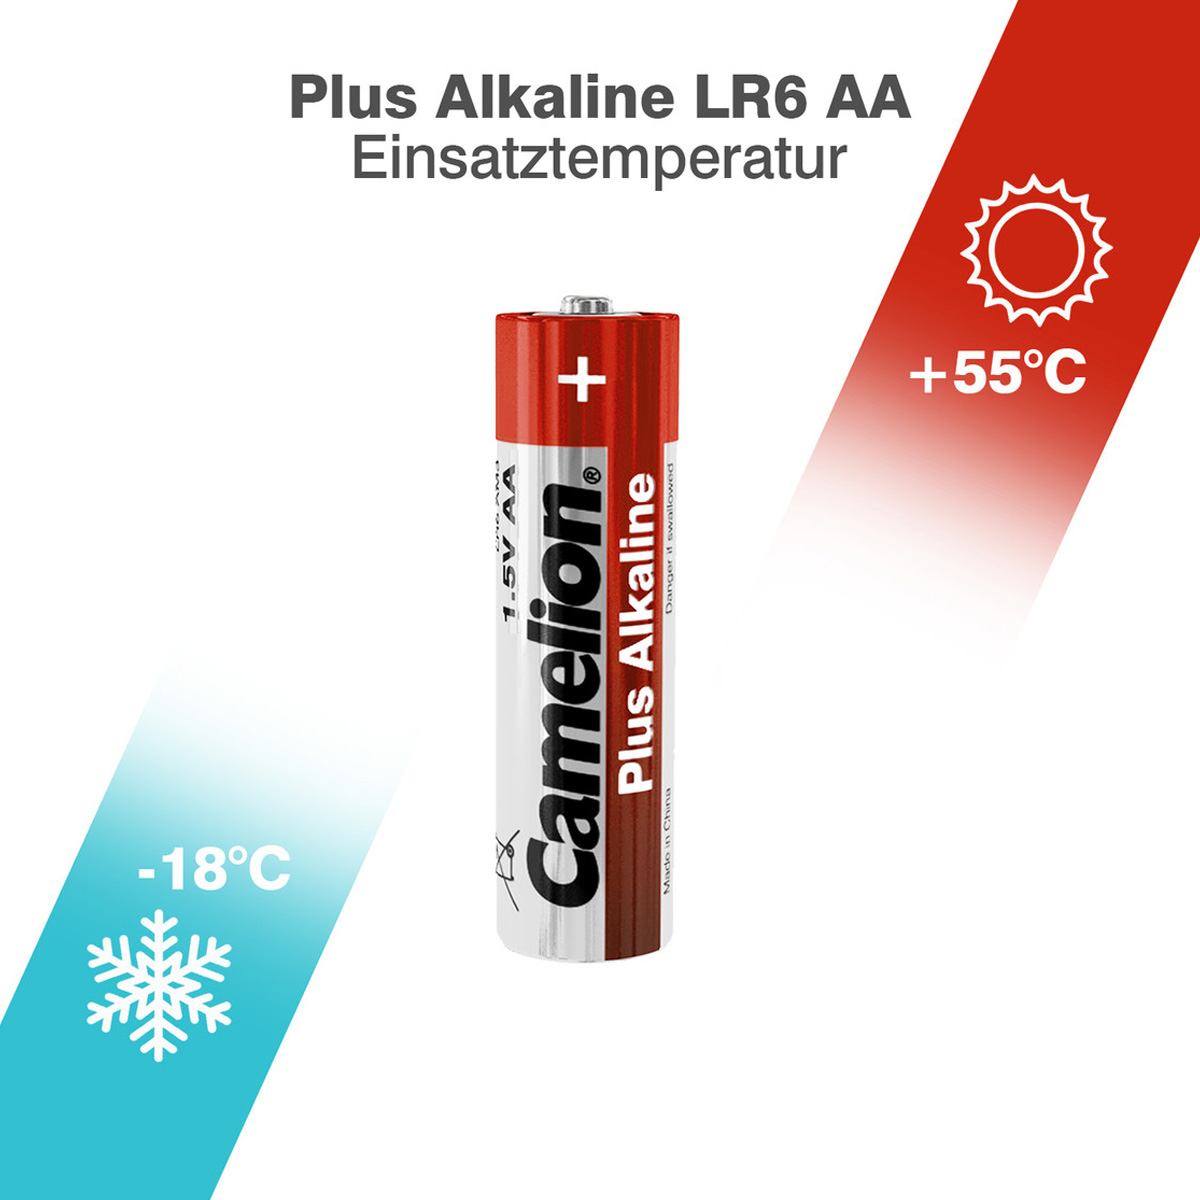 Batterie Mignon AA LR6 1,5V PLUS Alkaline - Leistung auf Dauer - 2 Stück